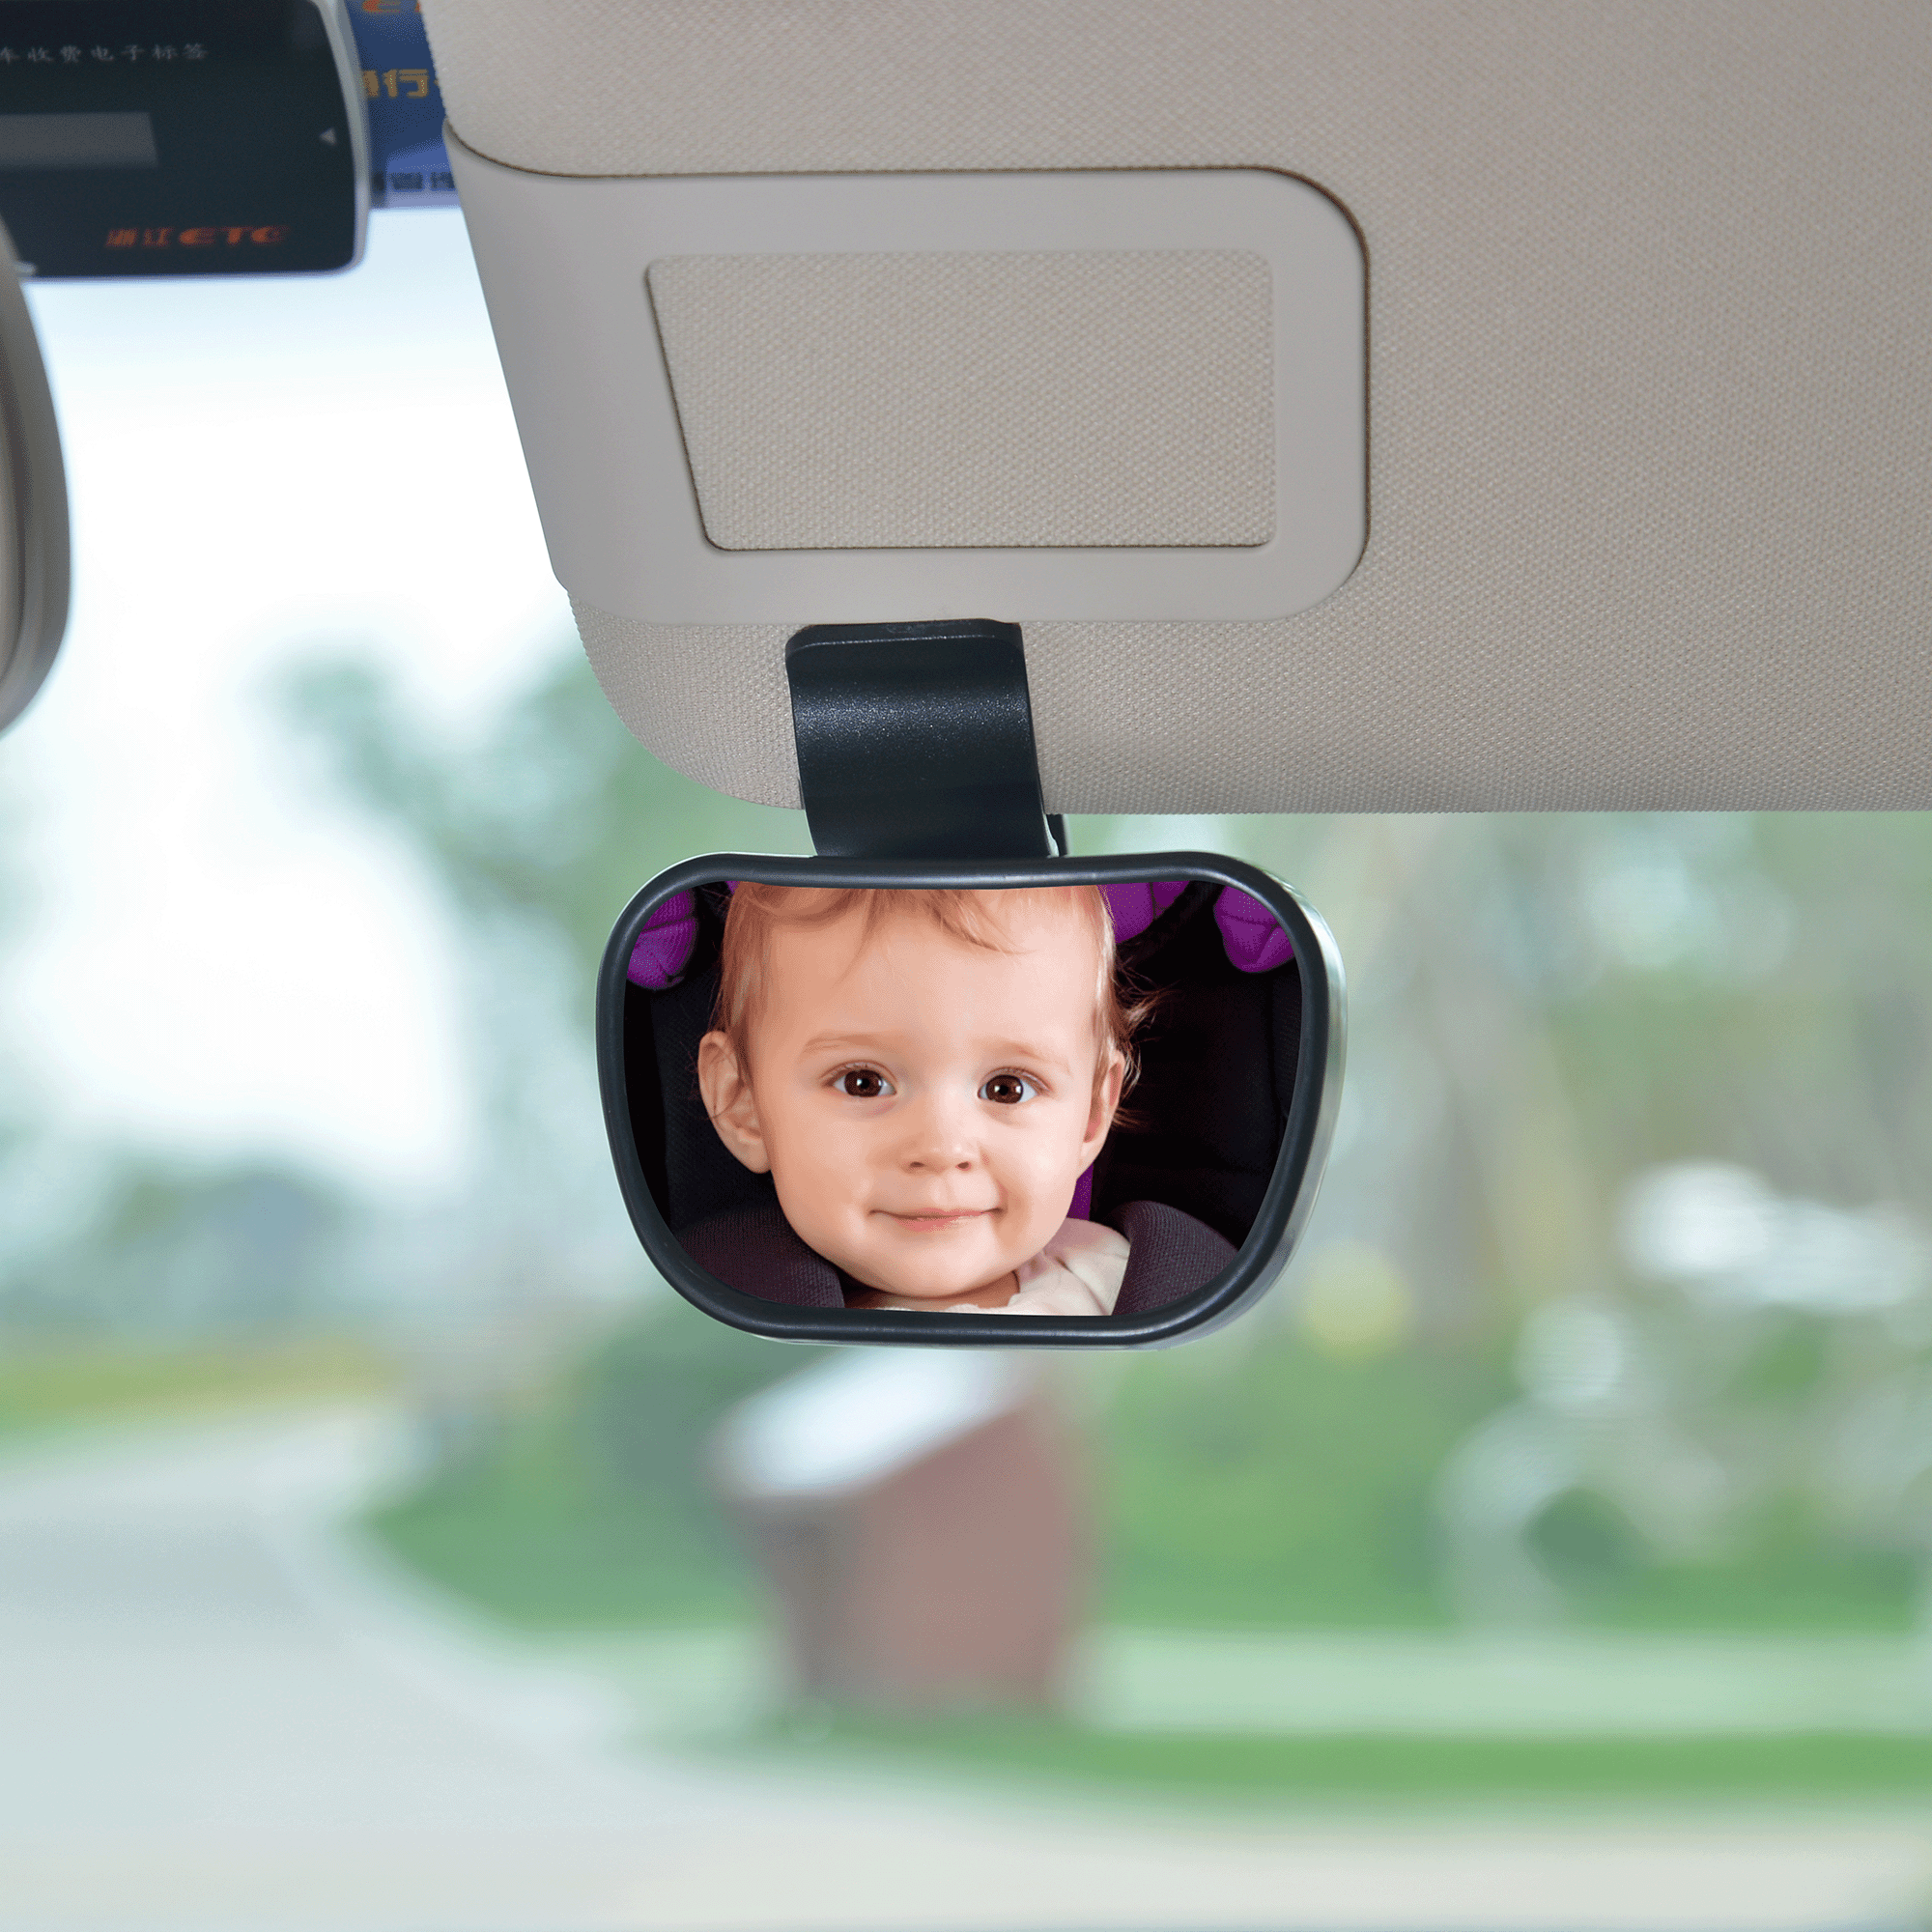 Kaufen Sie China Großhandels-Rückansicht 360 Grad Auto Baby Spiegel Kosten  Günstige Auto Spiegel Für Baby und Baby Auto Spiegel Großhandelsanbietern  zu einem Preis von 0.99 USD